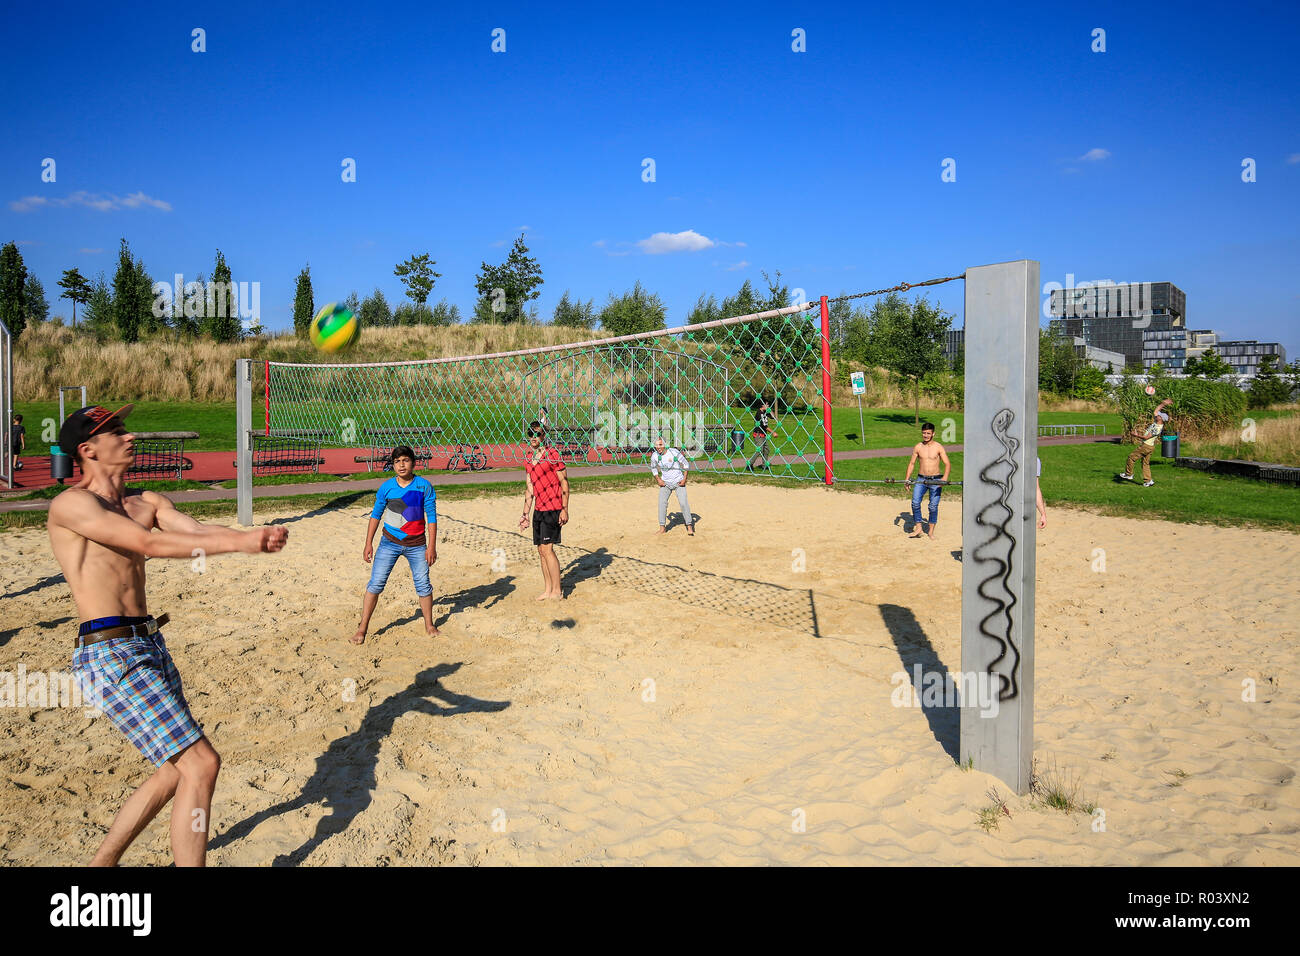 Essen, Ruhrgebiet, Germany, Krupp-Park, beach volleyball, urban development project Krupp-Guertel Stock Photo